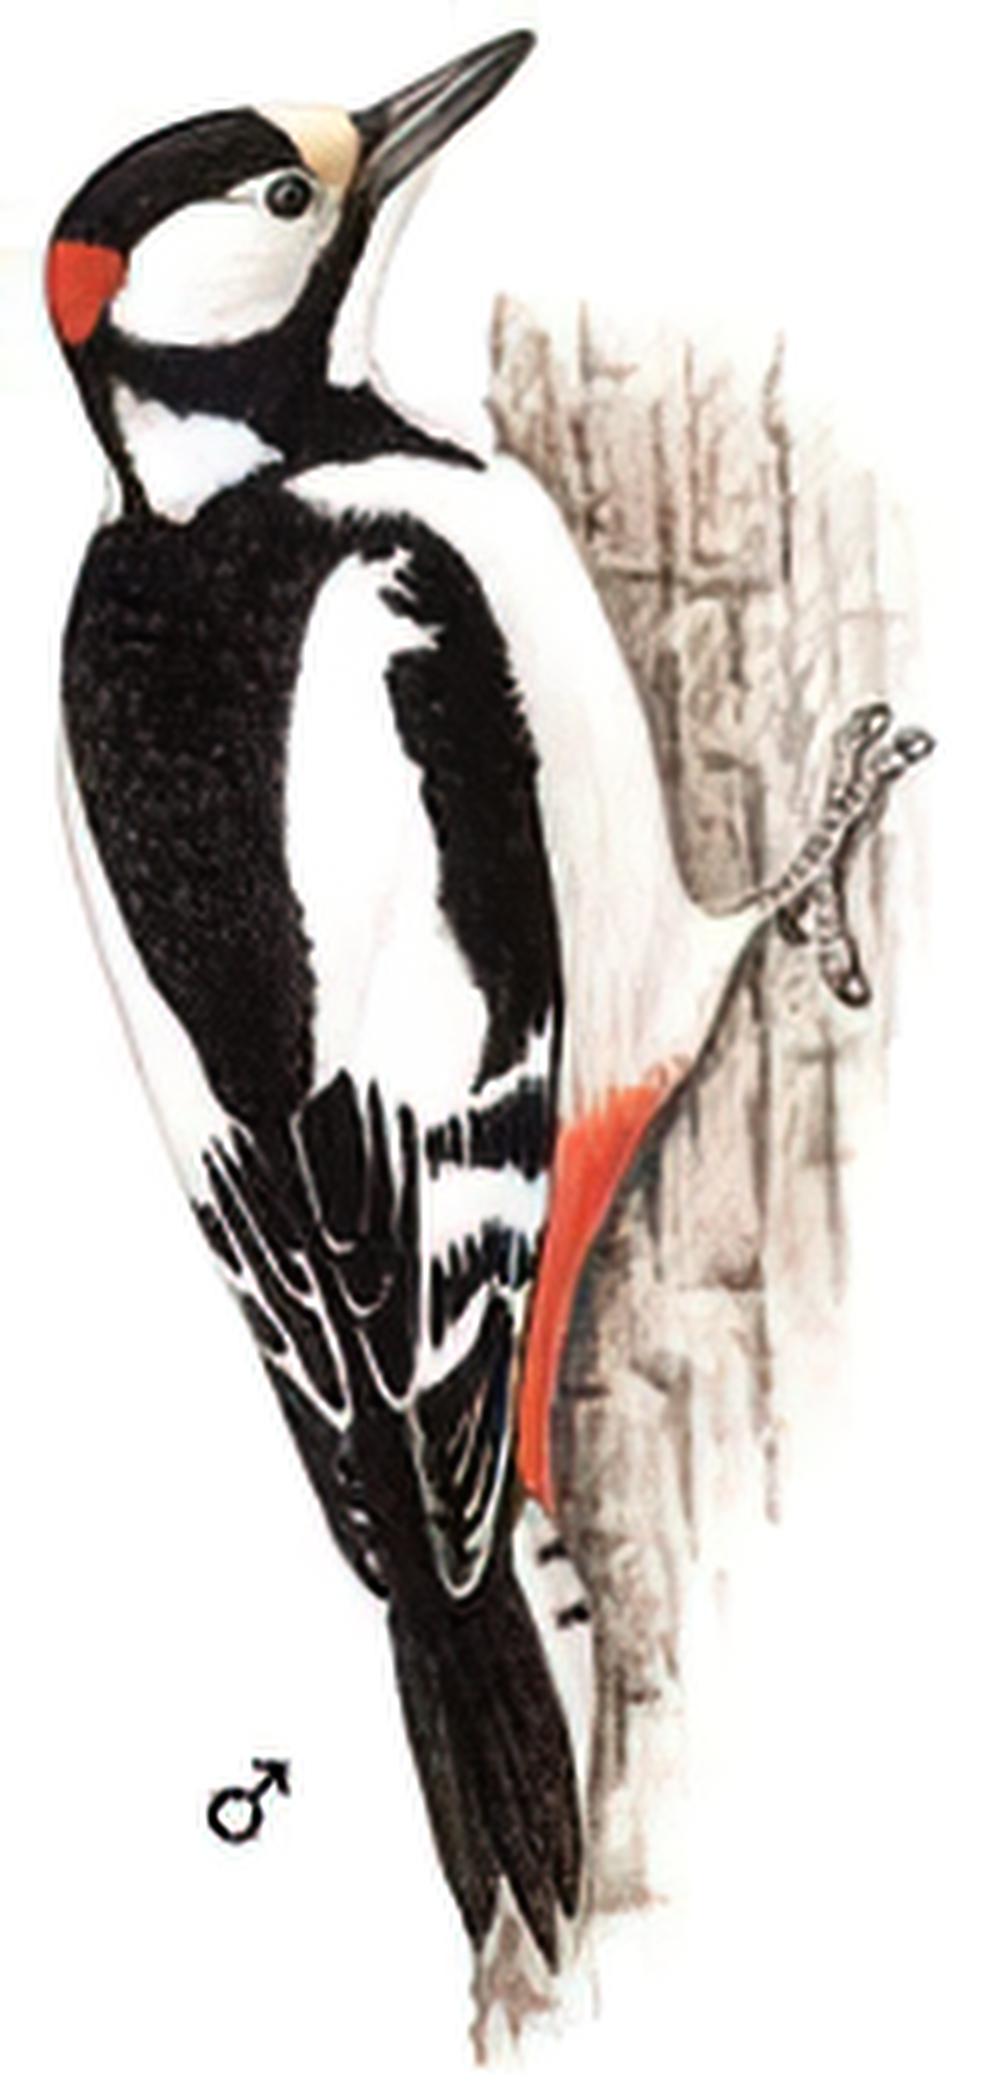 白翅啄木鸟 / White-winged Woodpecker / Dendrocopos leucopterus